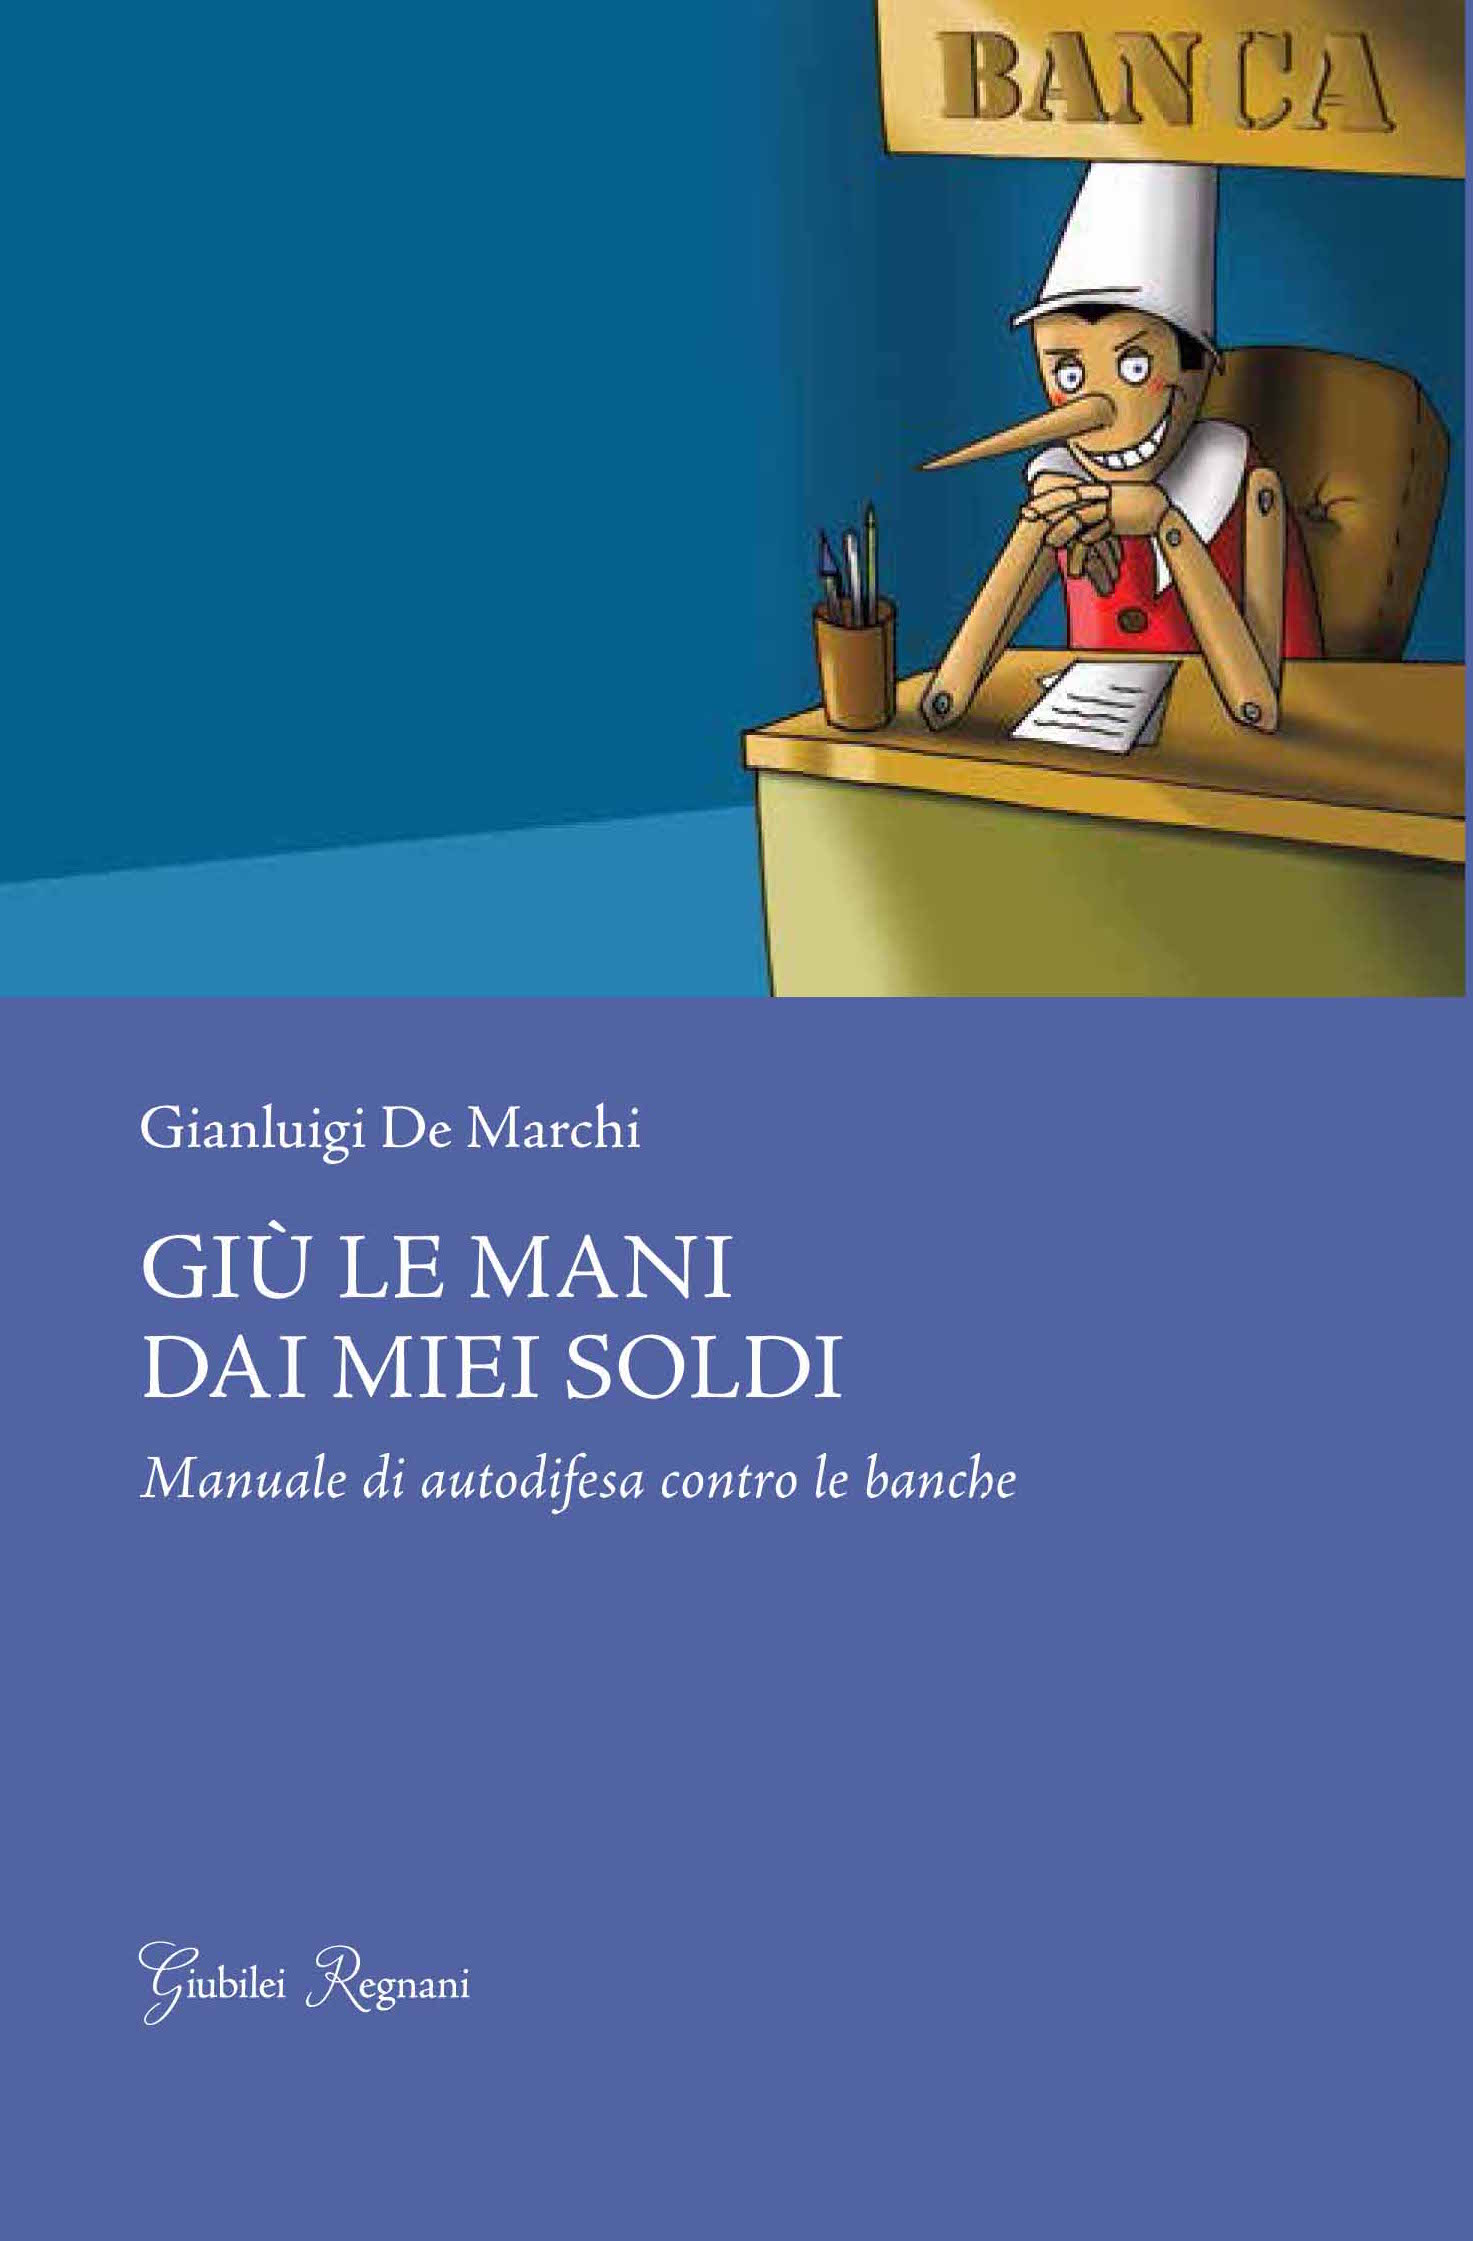 Giù le mani dai miei soldi, l’ultimo libro di Gianluigi De Marchi